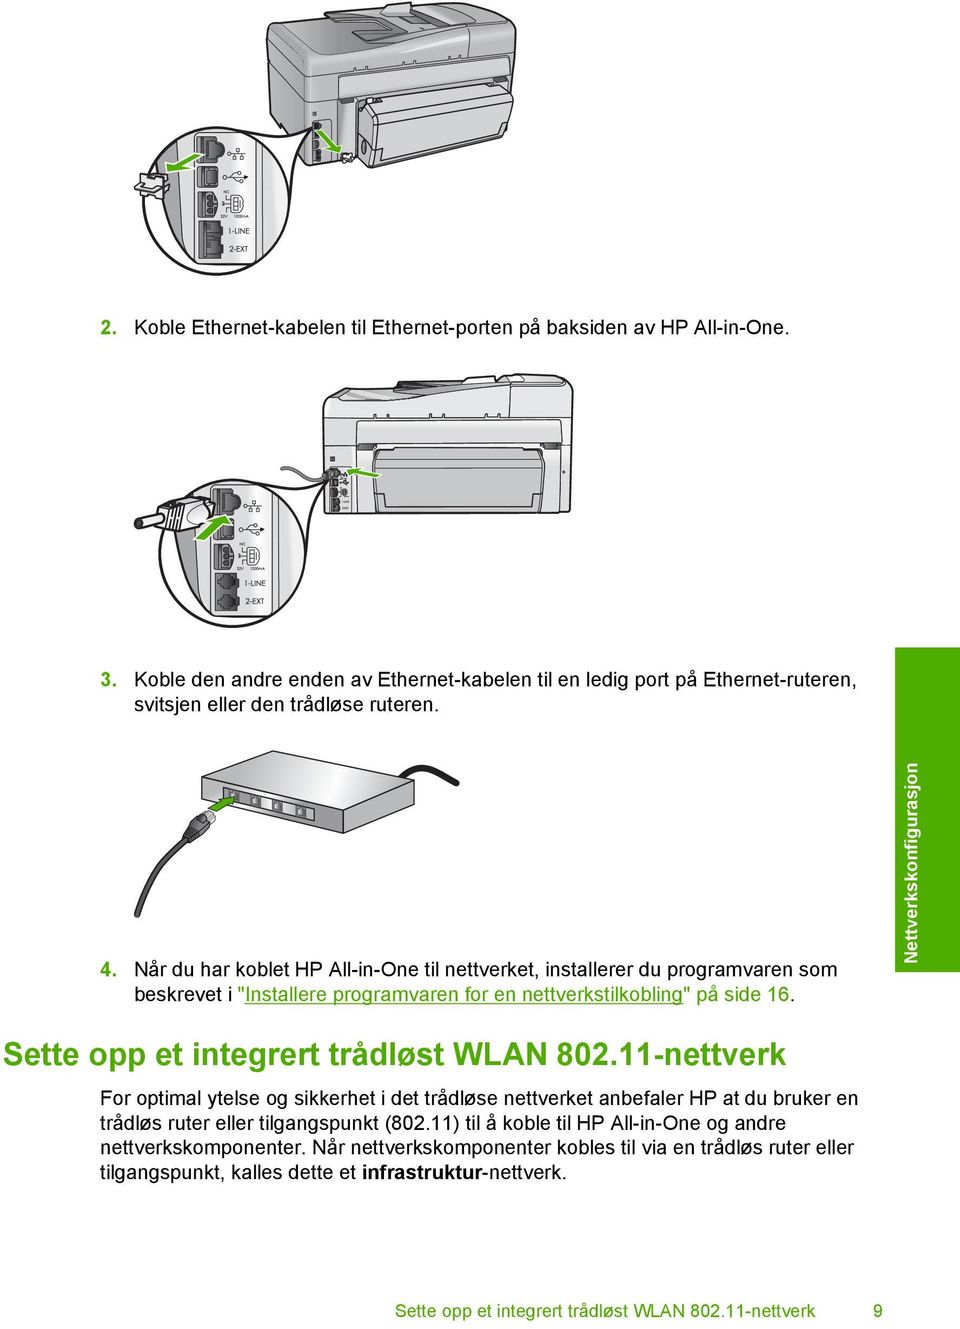 Nettverkskonfigurasjon Sette opp et integrert trådløst WLAN 802.